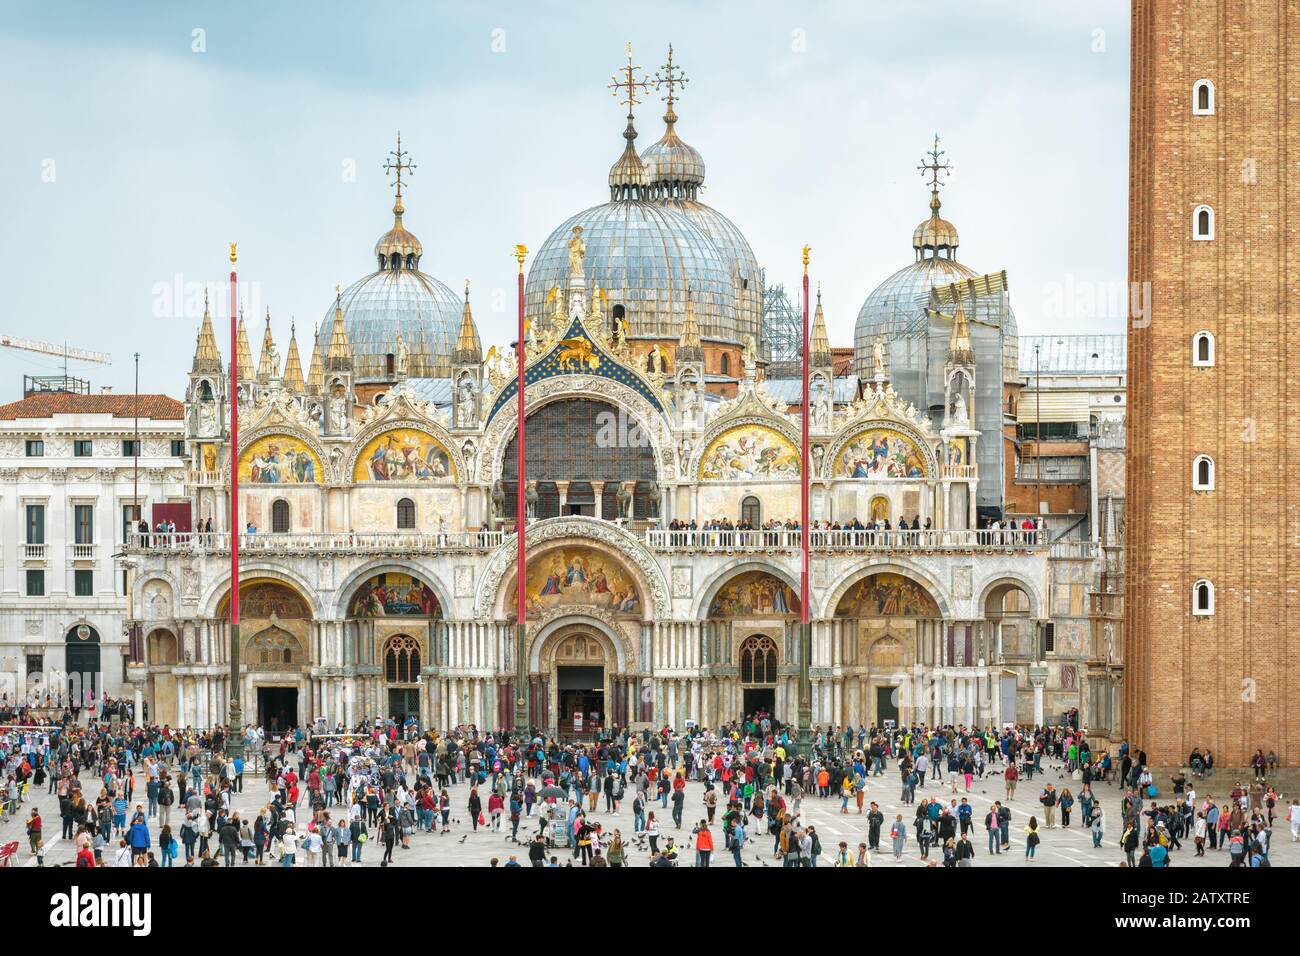 Venezia, Italia - 20 maggio 2017: Basilica di San Marco o Basilica di San Marco a Venezia. E' una delle principali attrazioni turistiche di Venezia. Molta gente cammina vicino Foto Stock